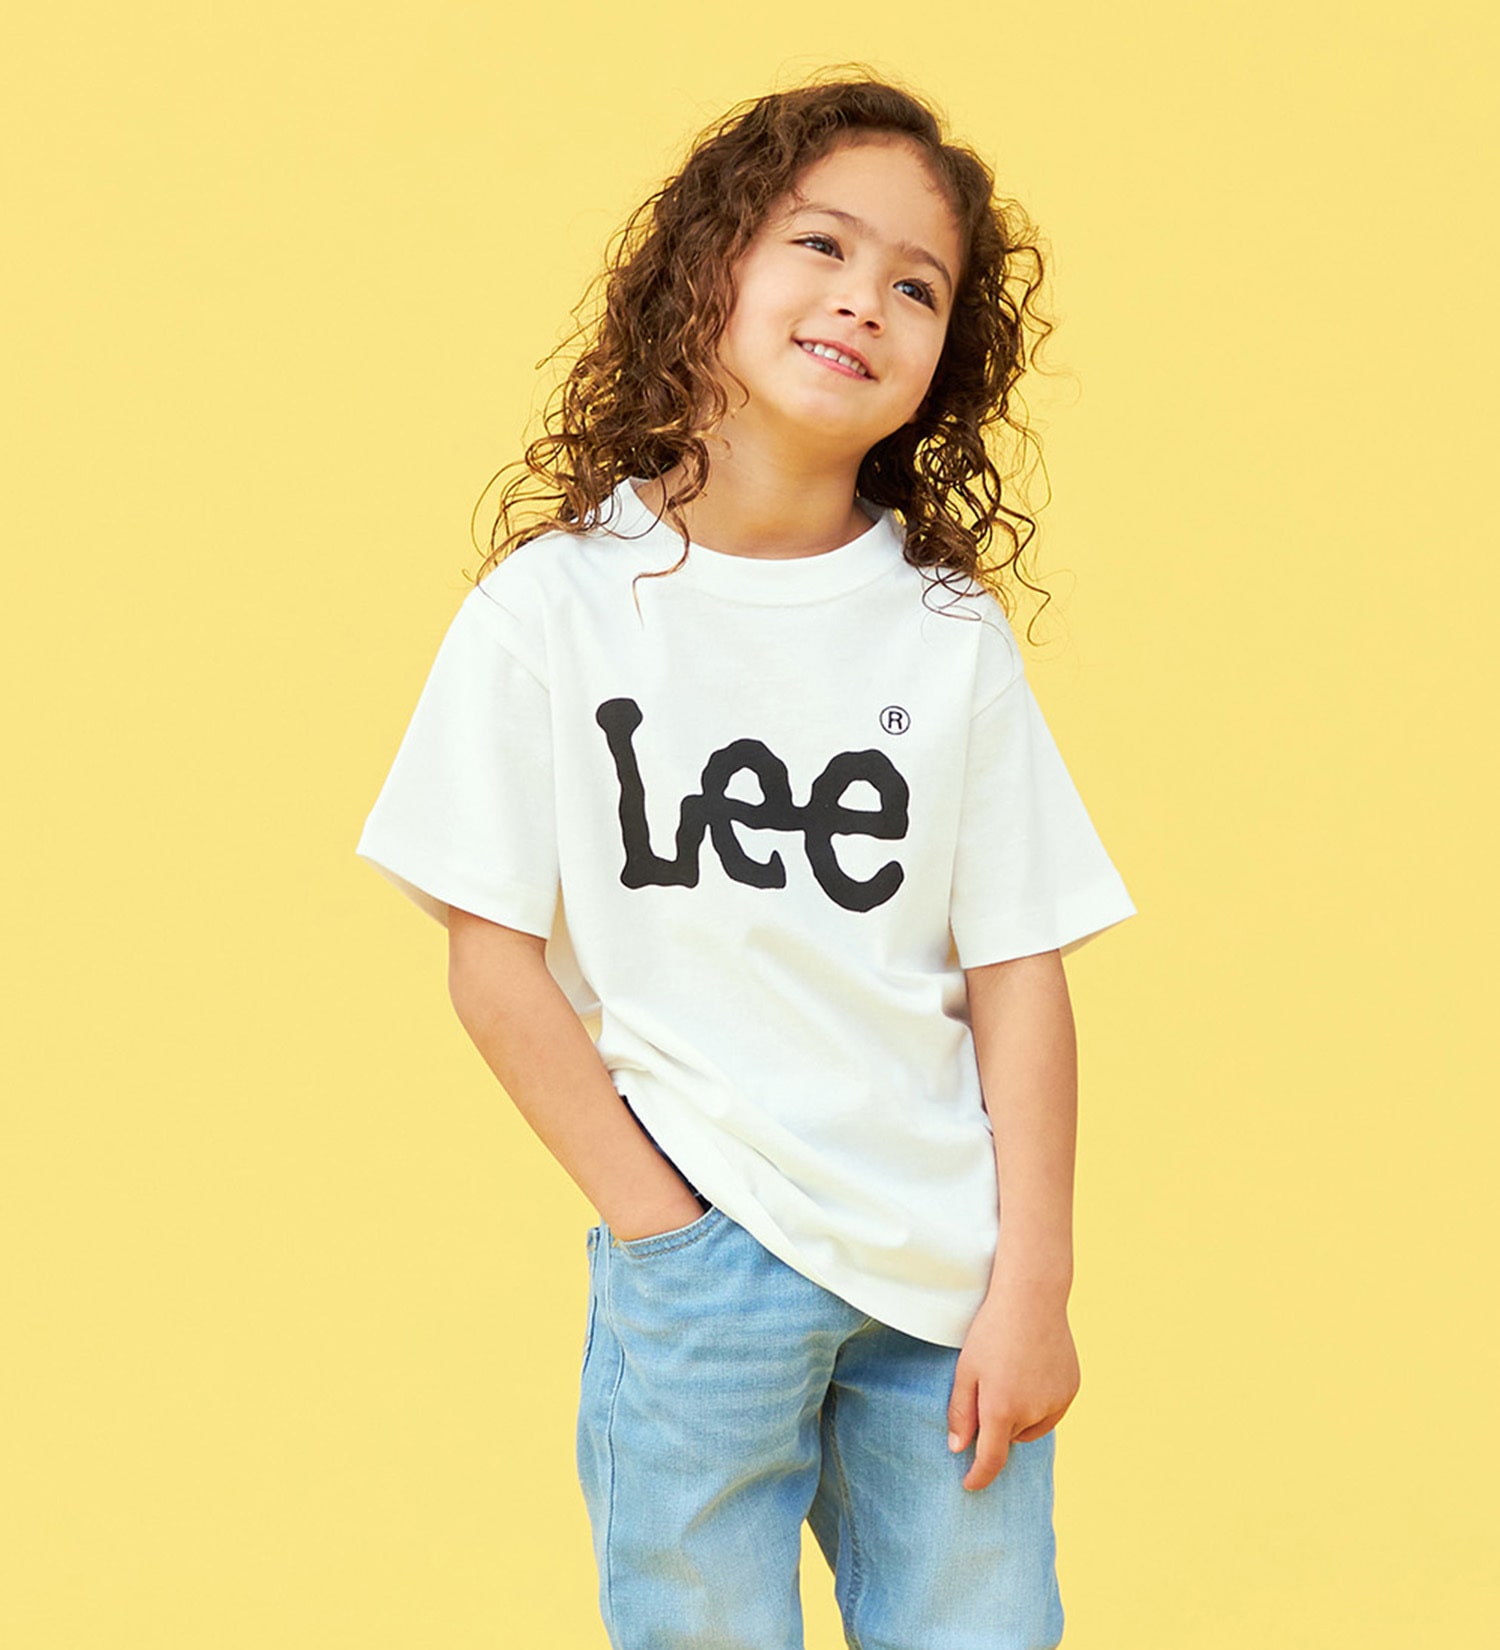 Lee(リー)の【110-150cm】キッズ Lee LOGO ショートスリーブ Tee|トップス/Tシャツ/カットソー/キッズ|ホワイト